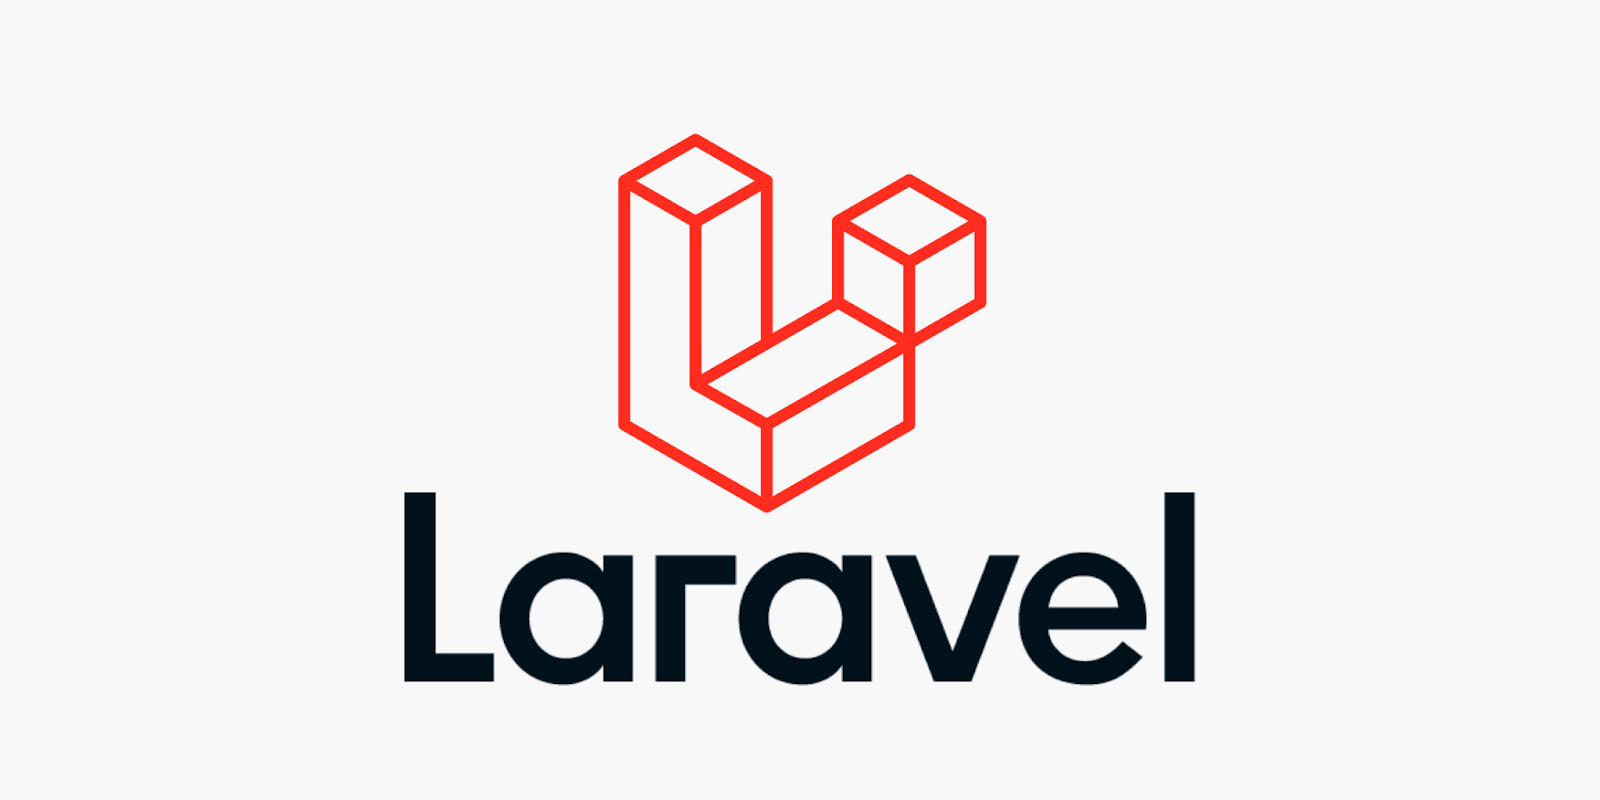 Laravel-logotypen.